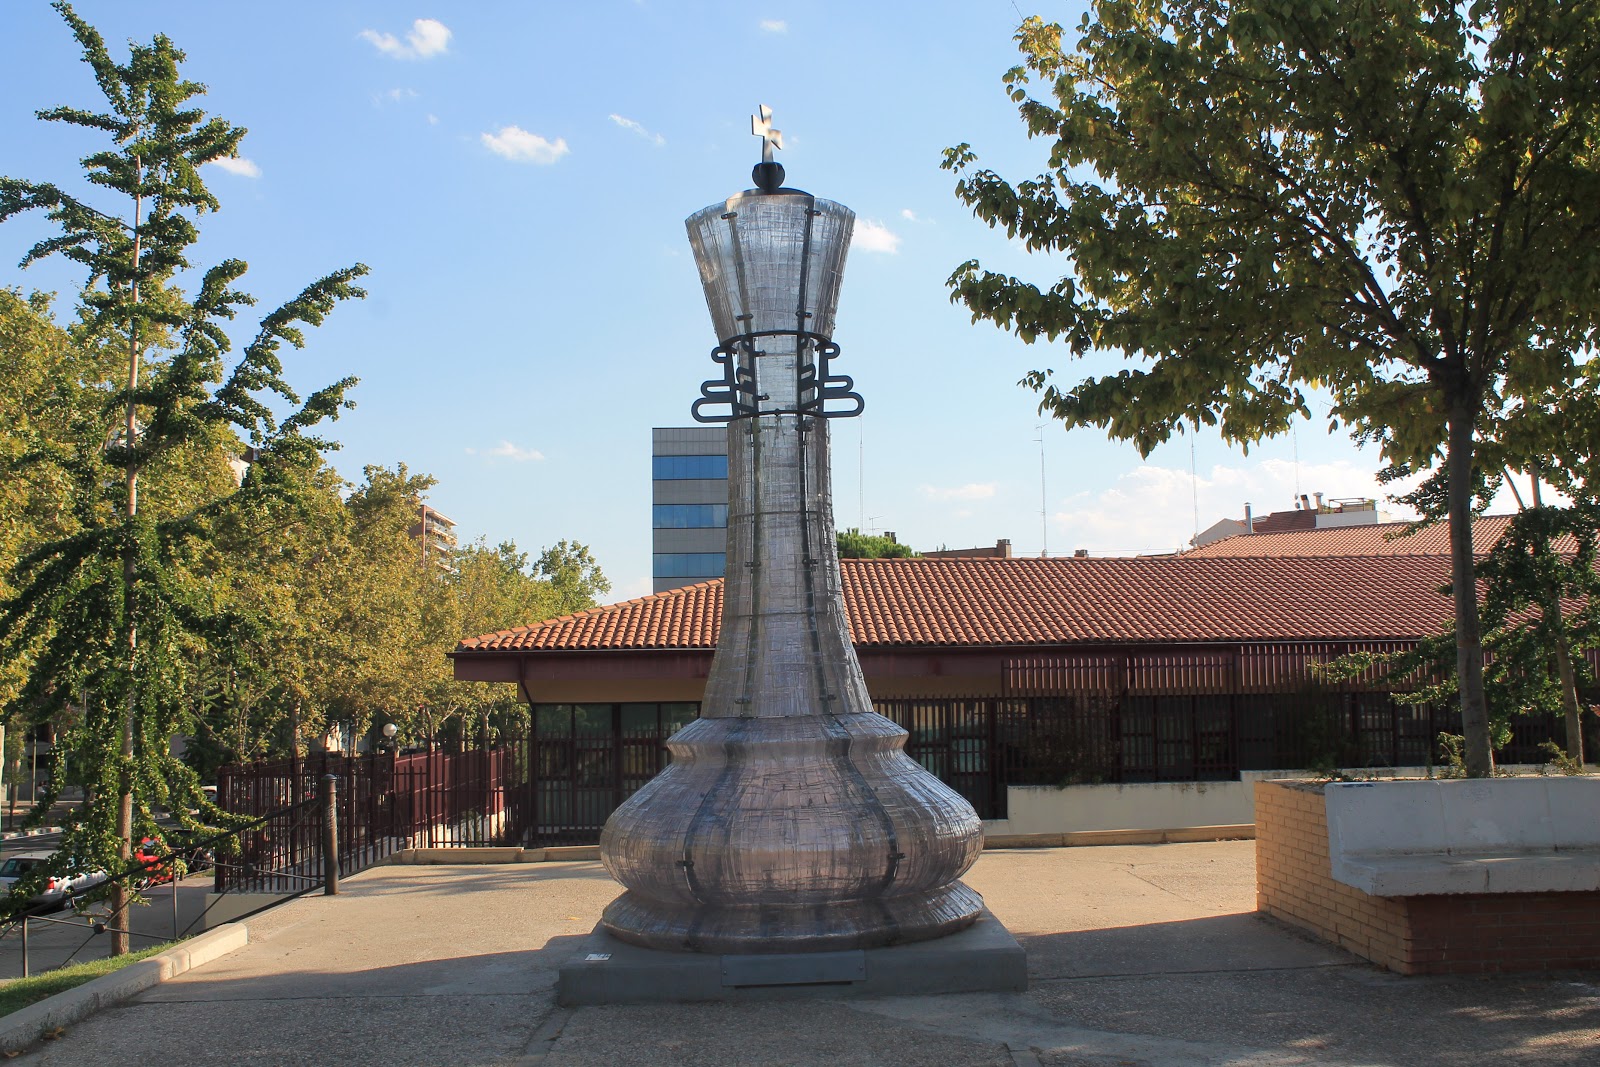 El Sombrero de Nosferatu: Madrid Mágico XI: Parque del Ajedrez “El